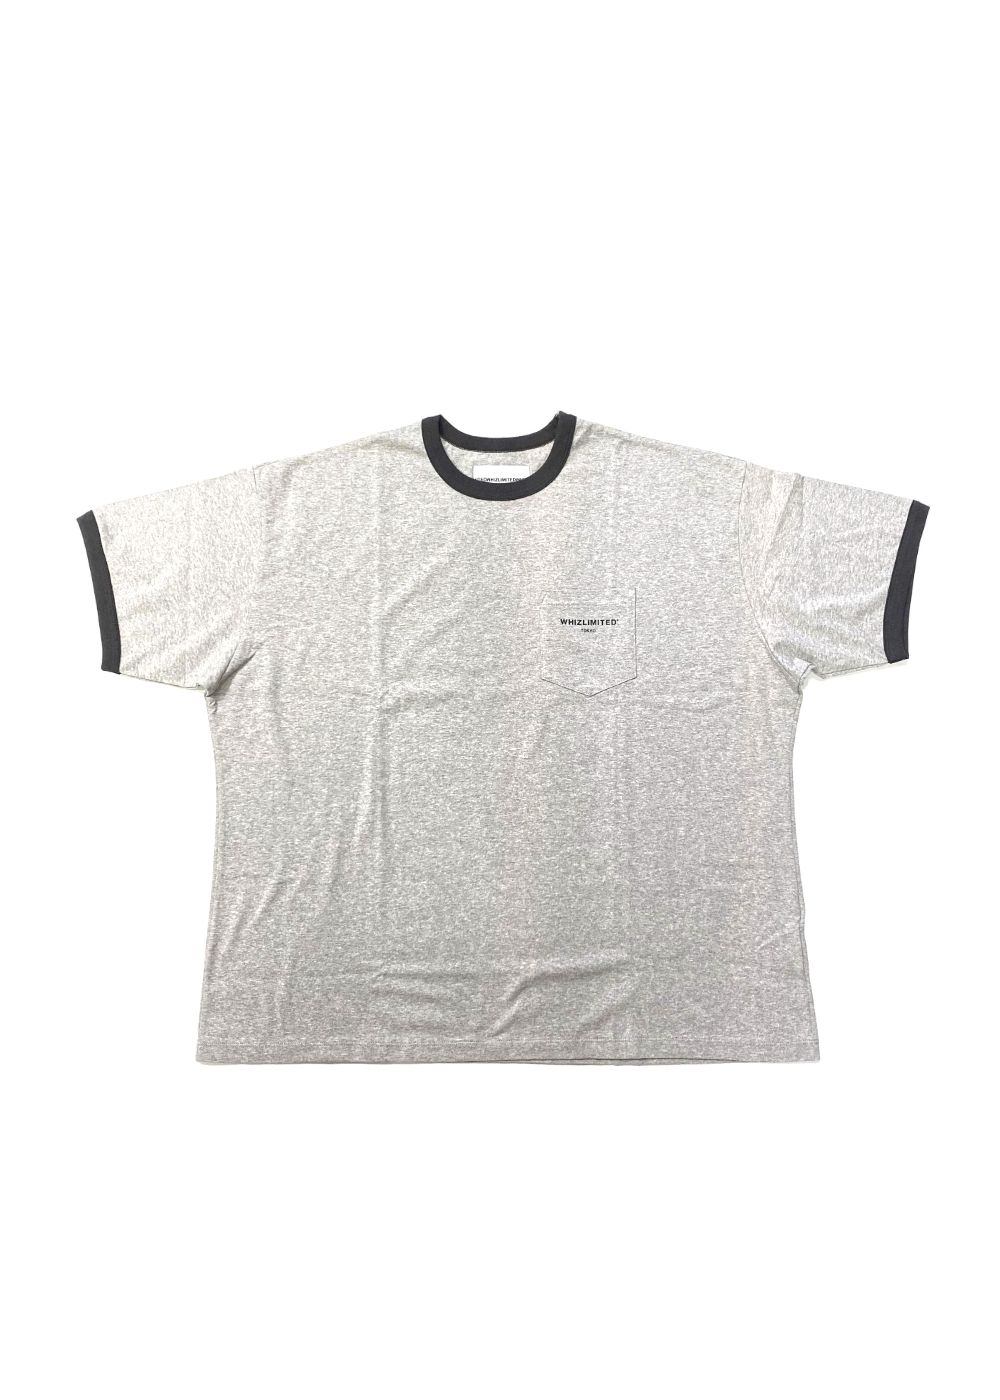 早い者勝ち】whiz limited Tシャツ | www.innoveering.net